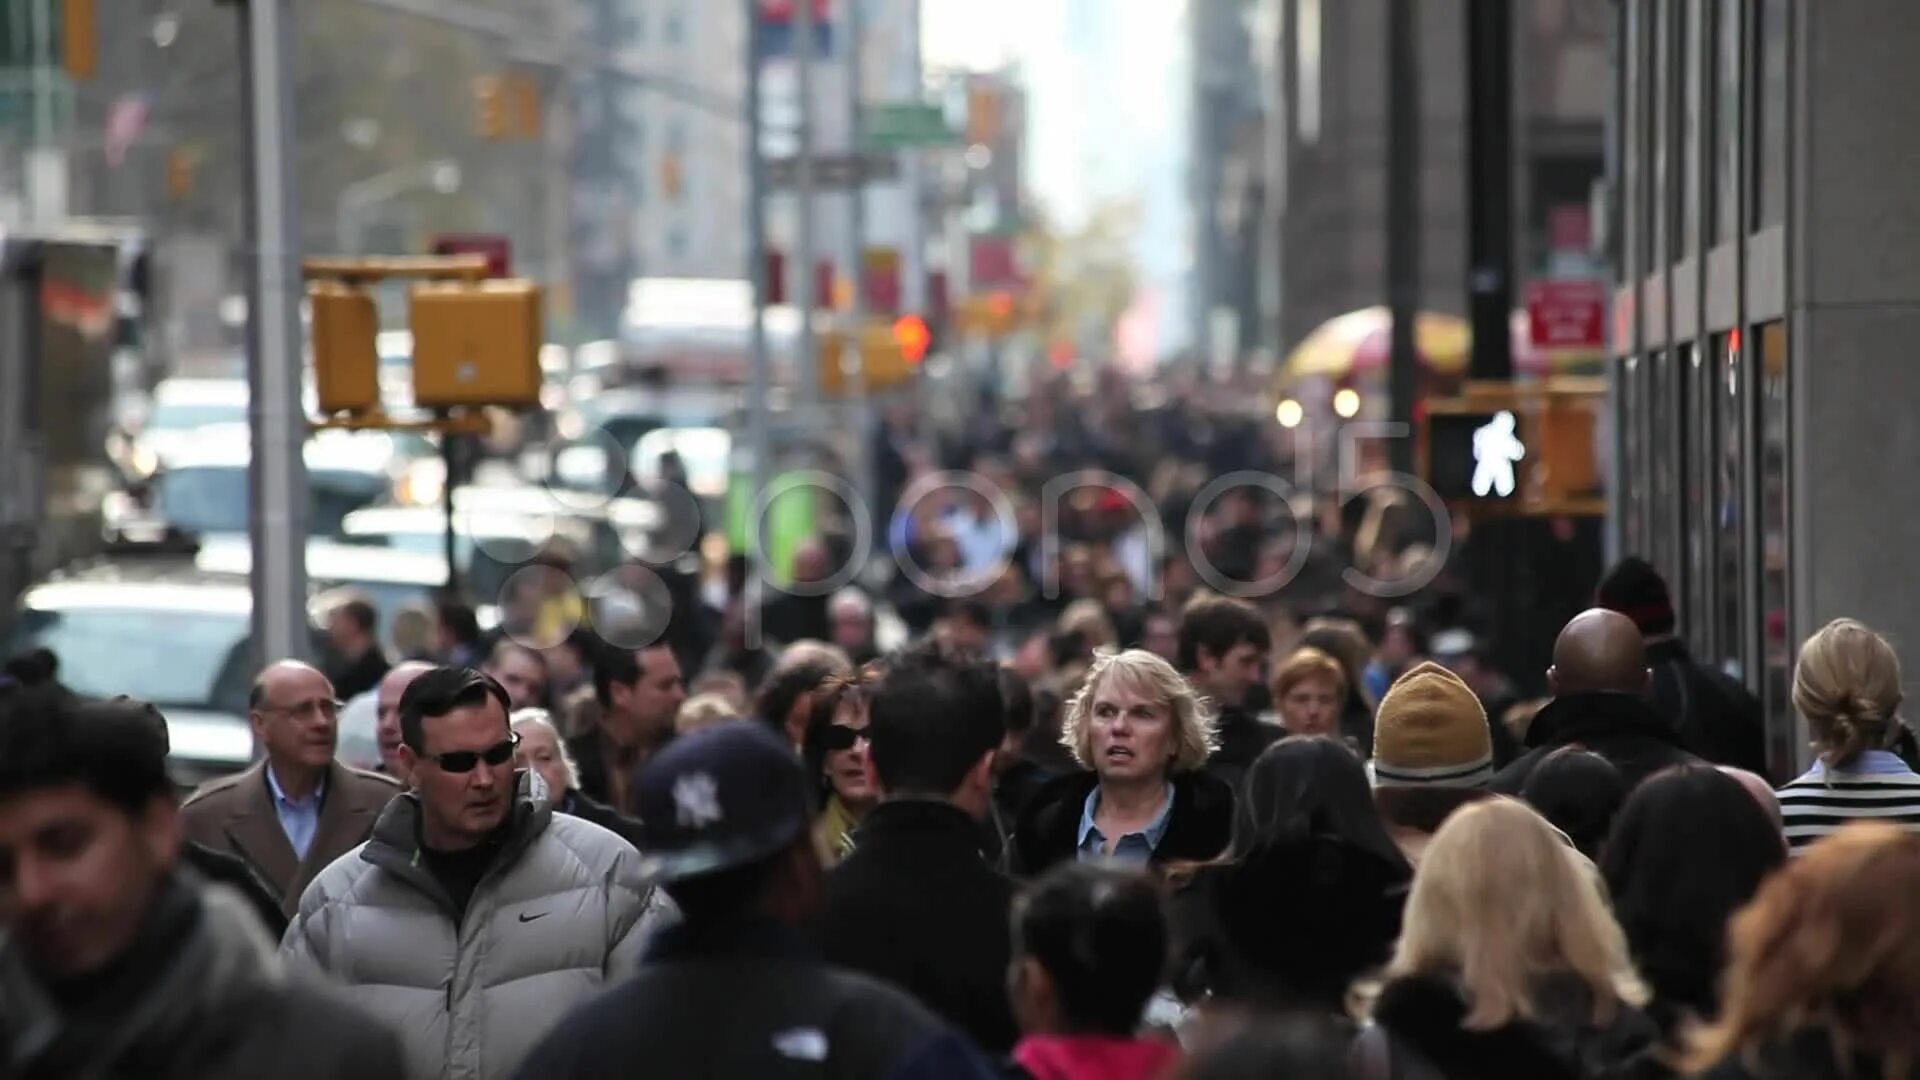 Нью-Йорк 23 стрит. Человек толпы. Люди в городе. Люди на улице. Crowded street